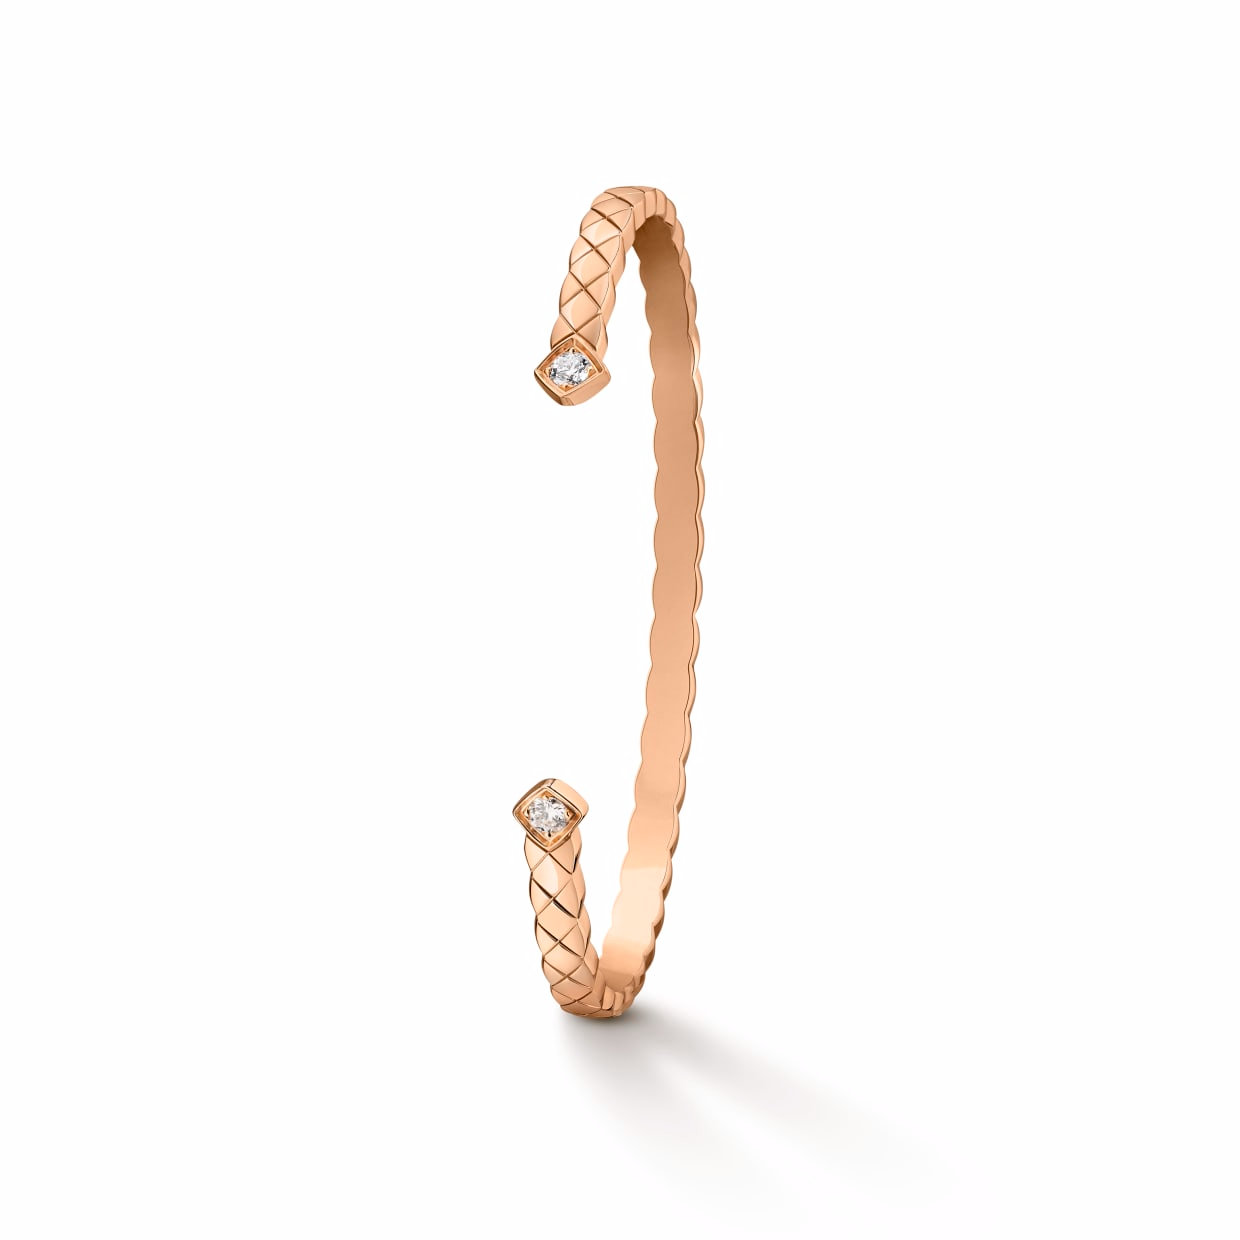 Gioielli OEM / ODM Bracciale rigido per gioielli dal design personalizzato in gioielli in argento placcato oro rosa 18 carati